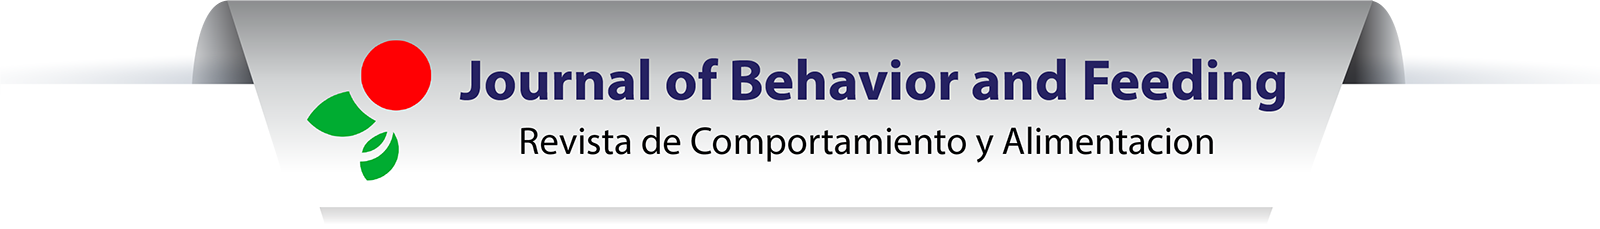 Revista electrónica Journal of Behavior and Feeding